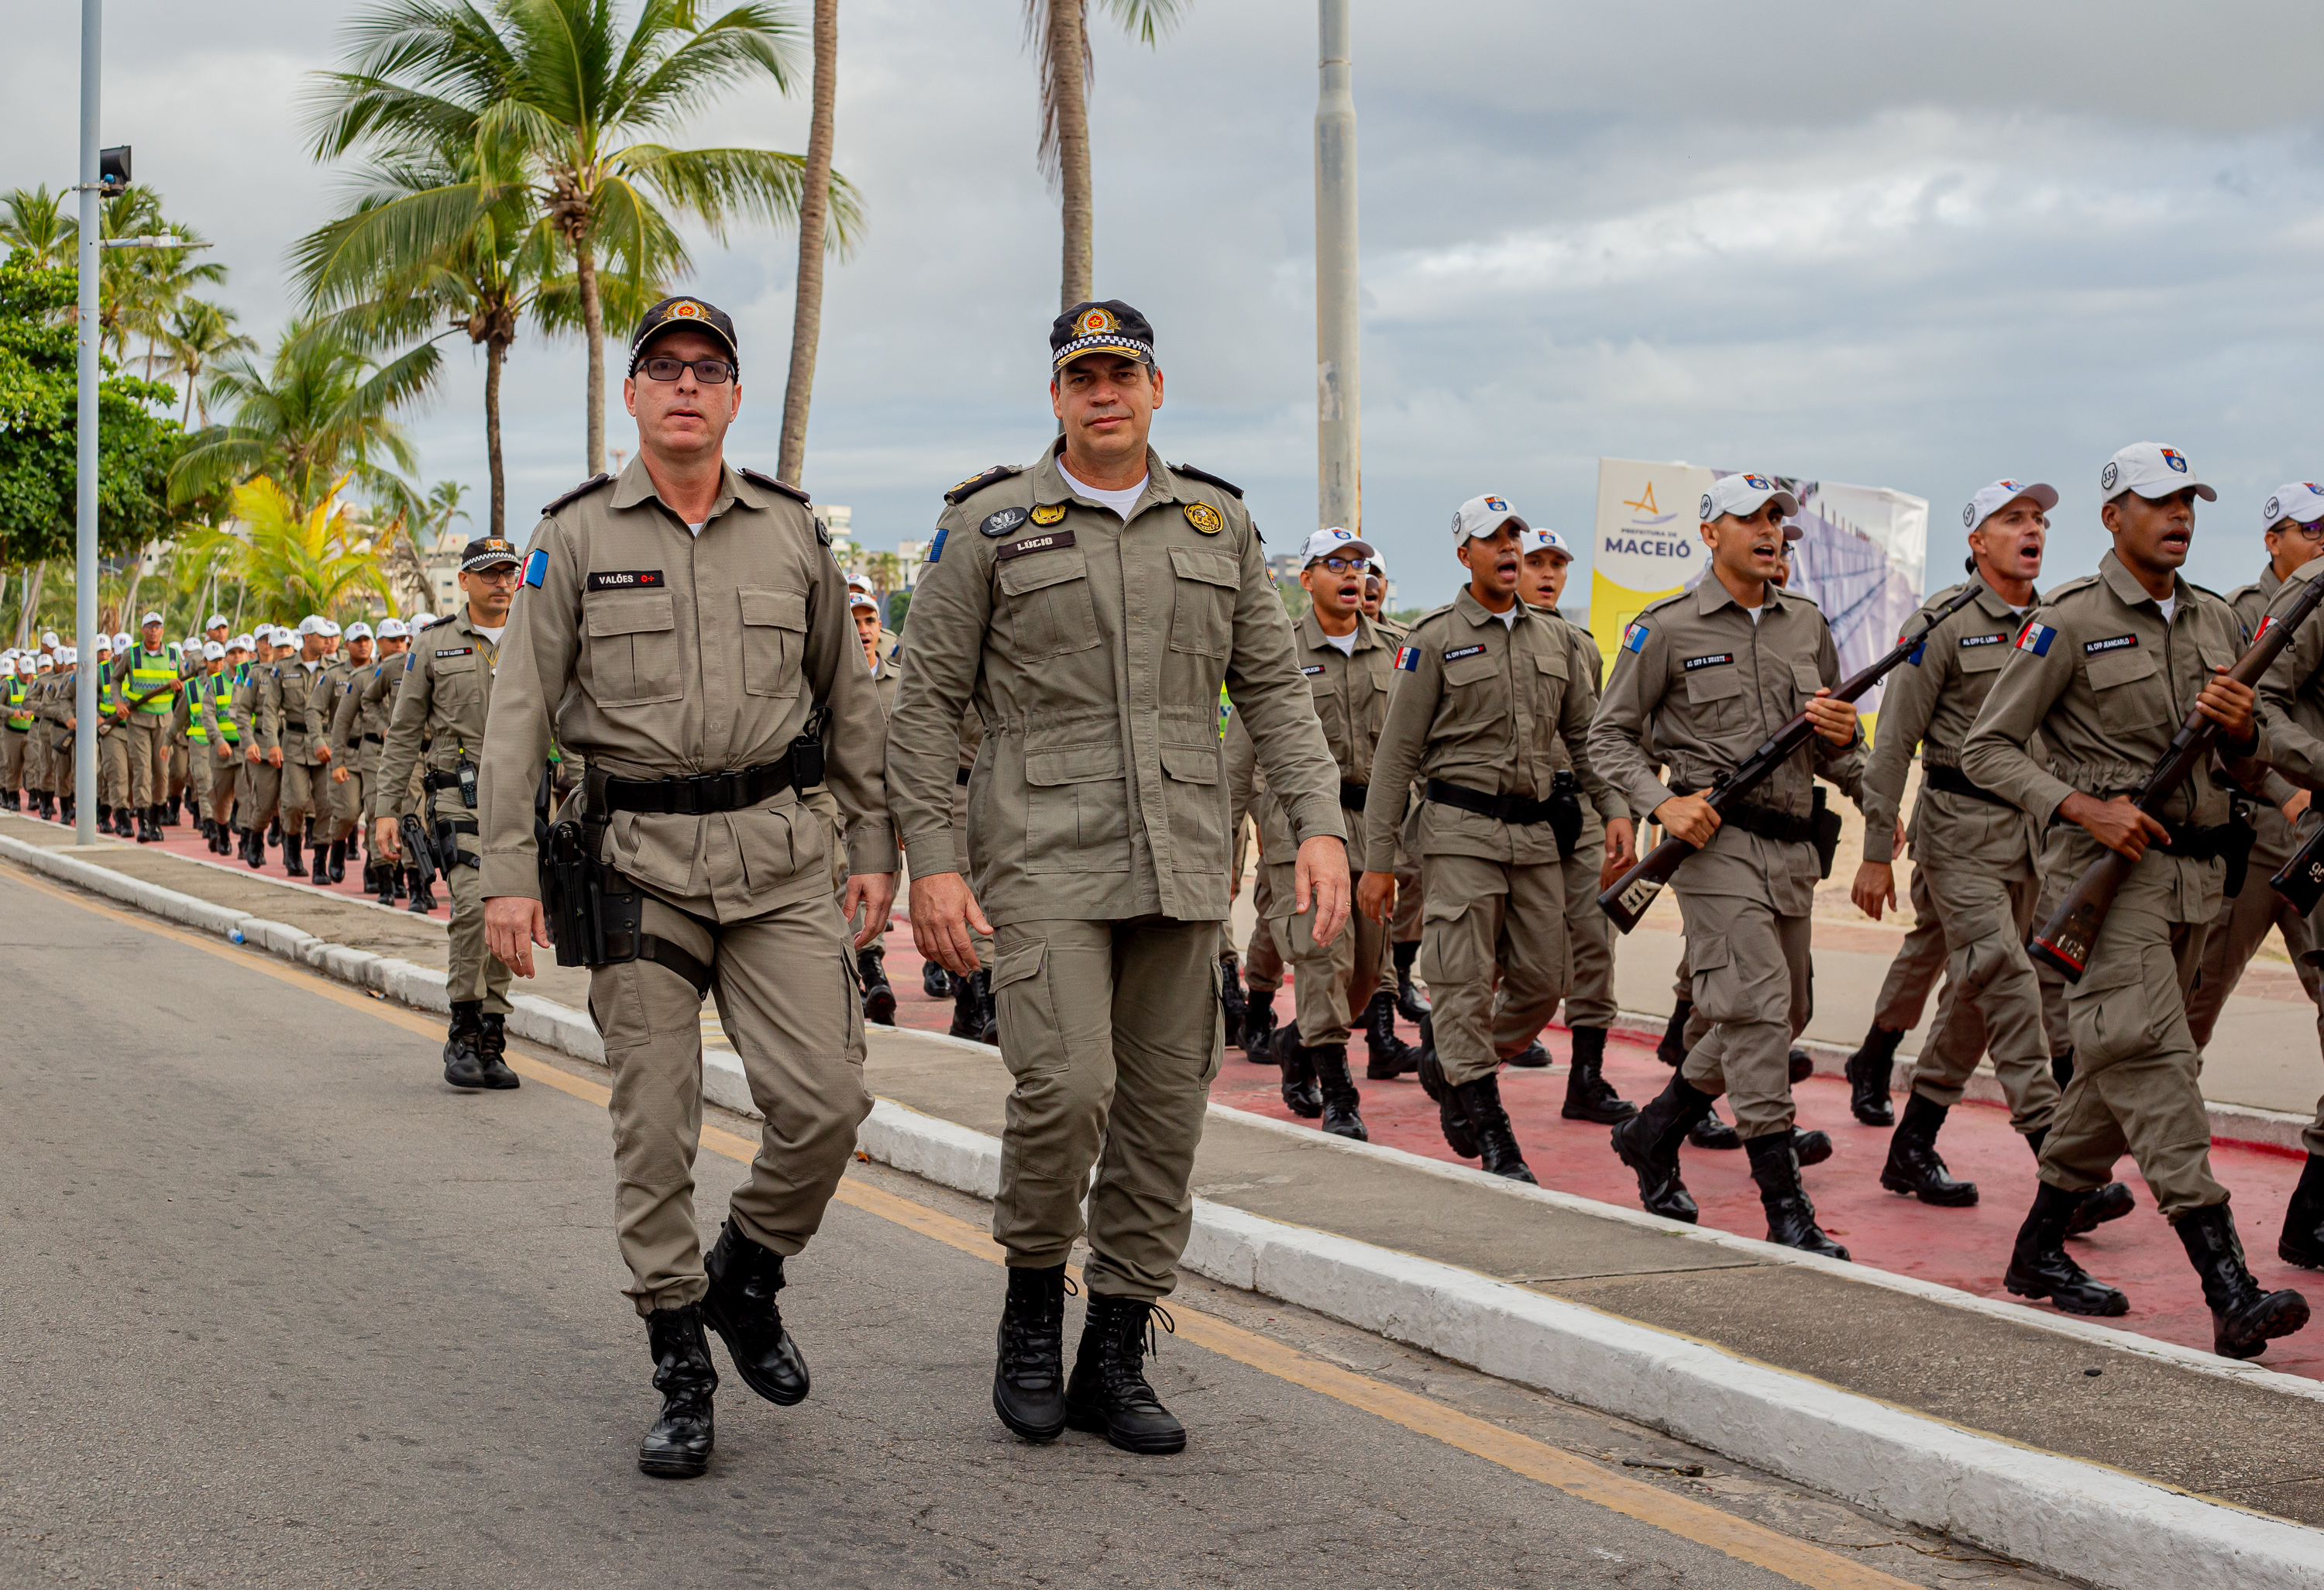 Futuros soldados da PM participam da Marcha de Ascensao Militar